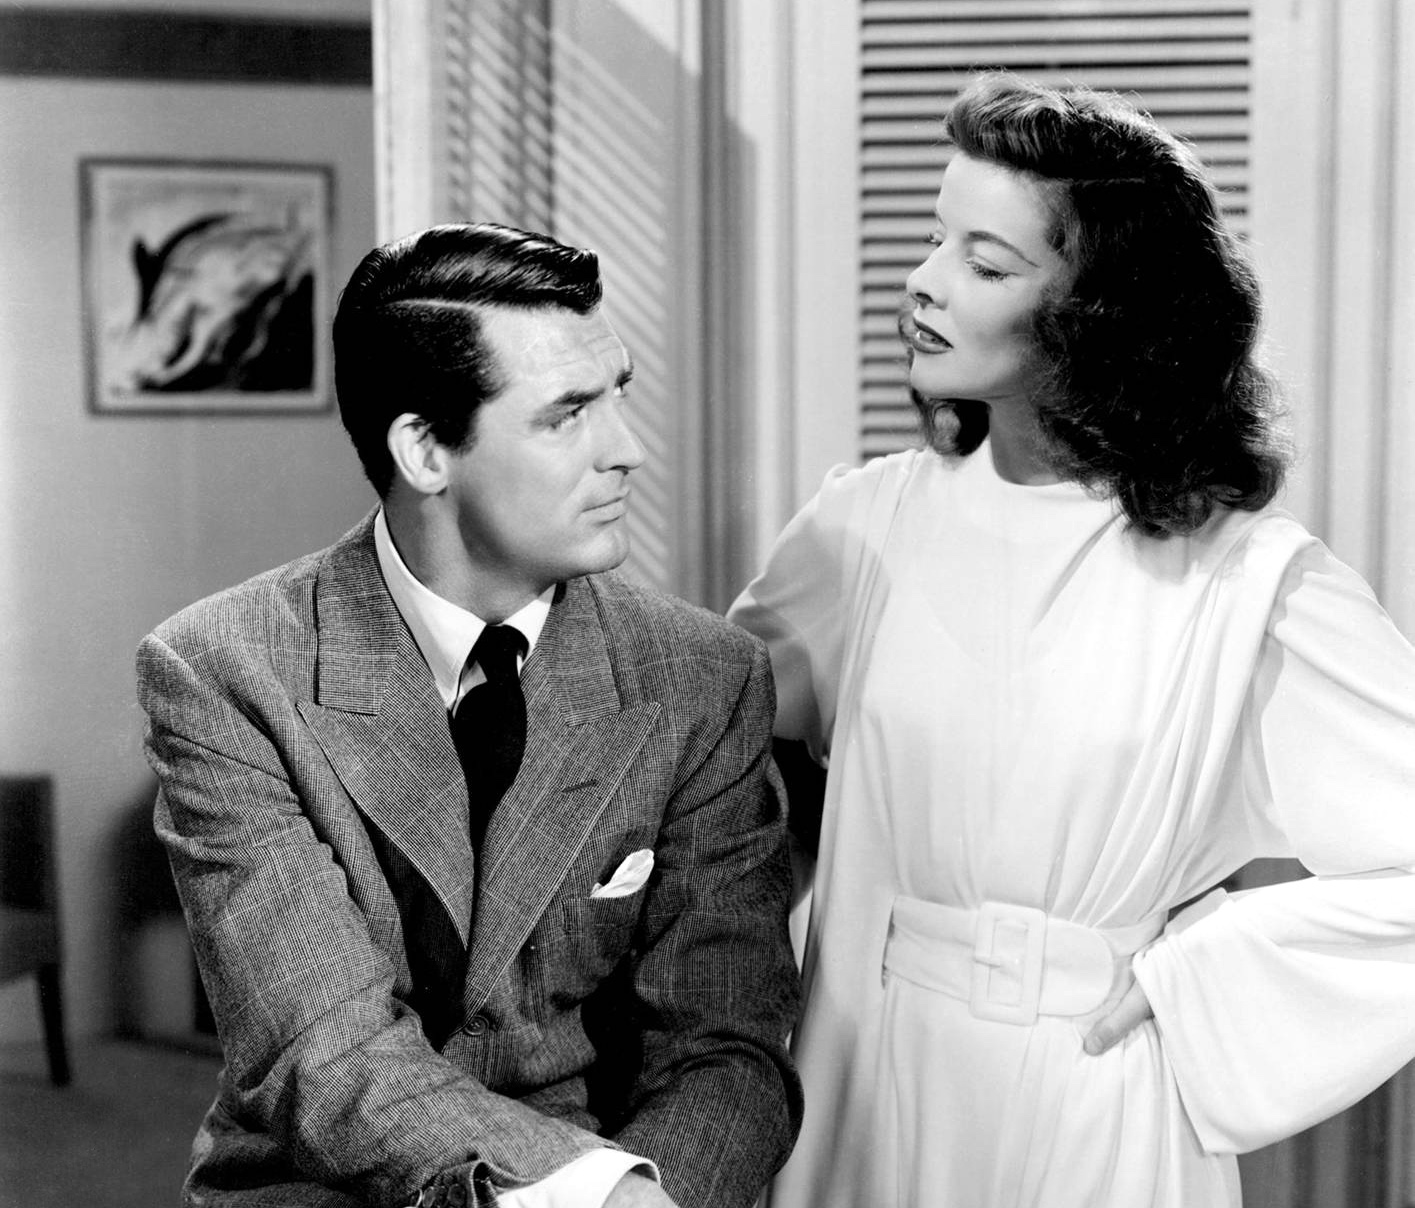 Любовник 60 лет. Кэри Грант и его жены. Cary Grant 1940. Филадельфийская история Кэри Грант.